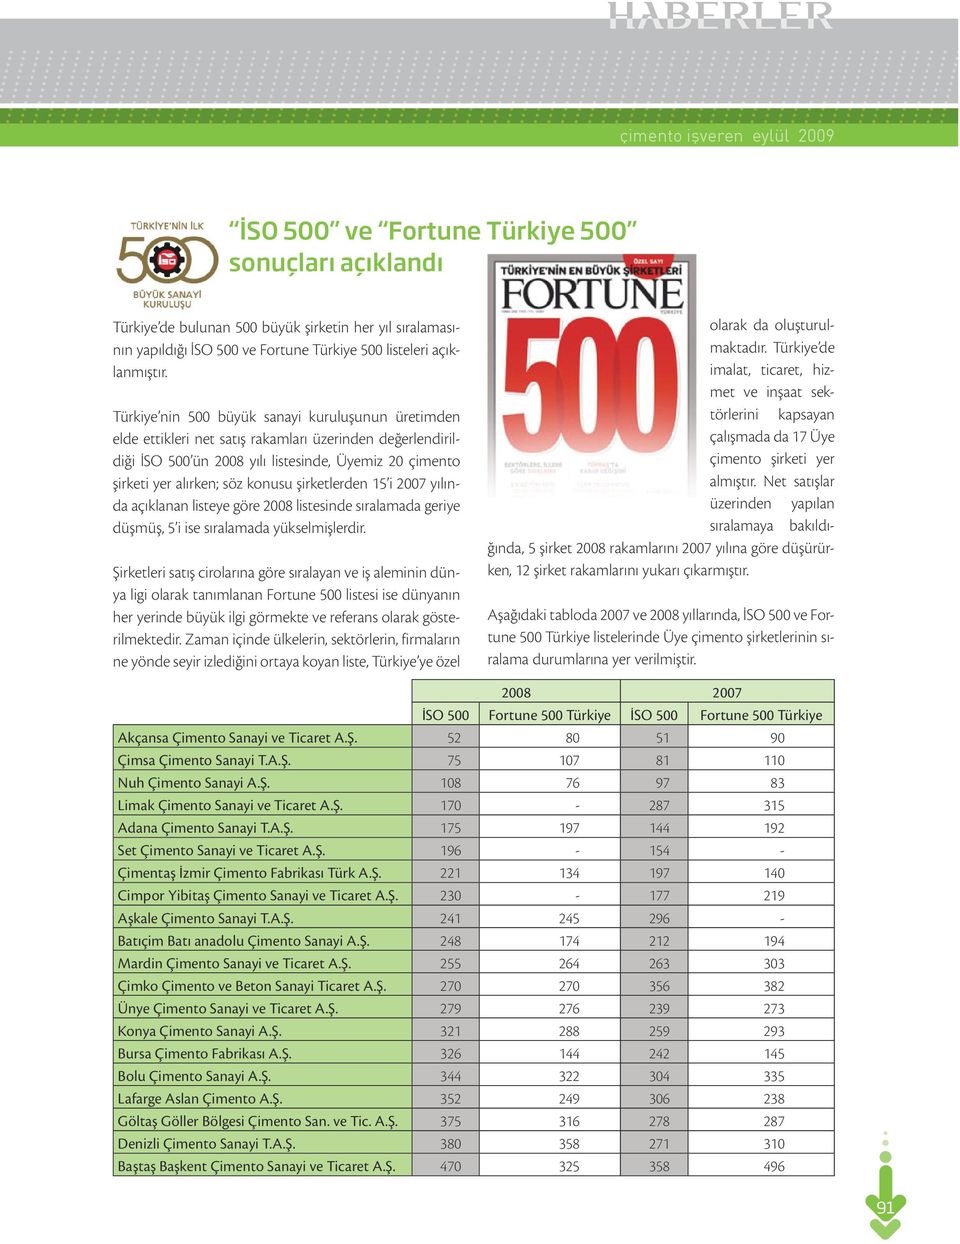 Türkiye nin 500 büyük sanayi kuruluşunun üretimden elde ettikleri net satış rakamları üzerinden değerlendirildiği İSO 500 ün 2008 yılı listesinde, Üyemiz 20 çimento şirketi yer alırken; söz konusu